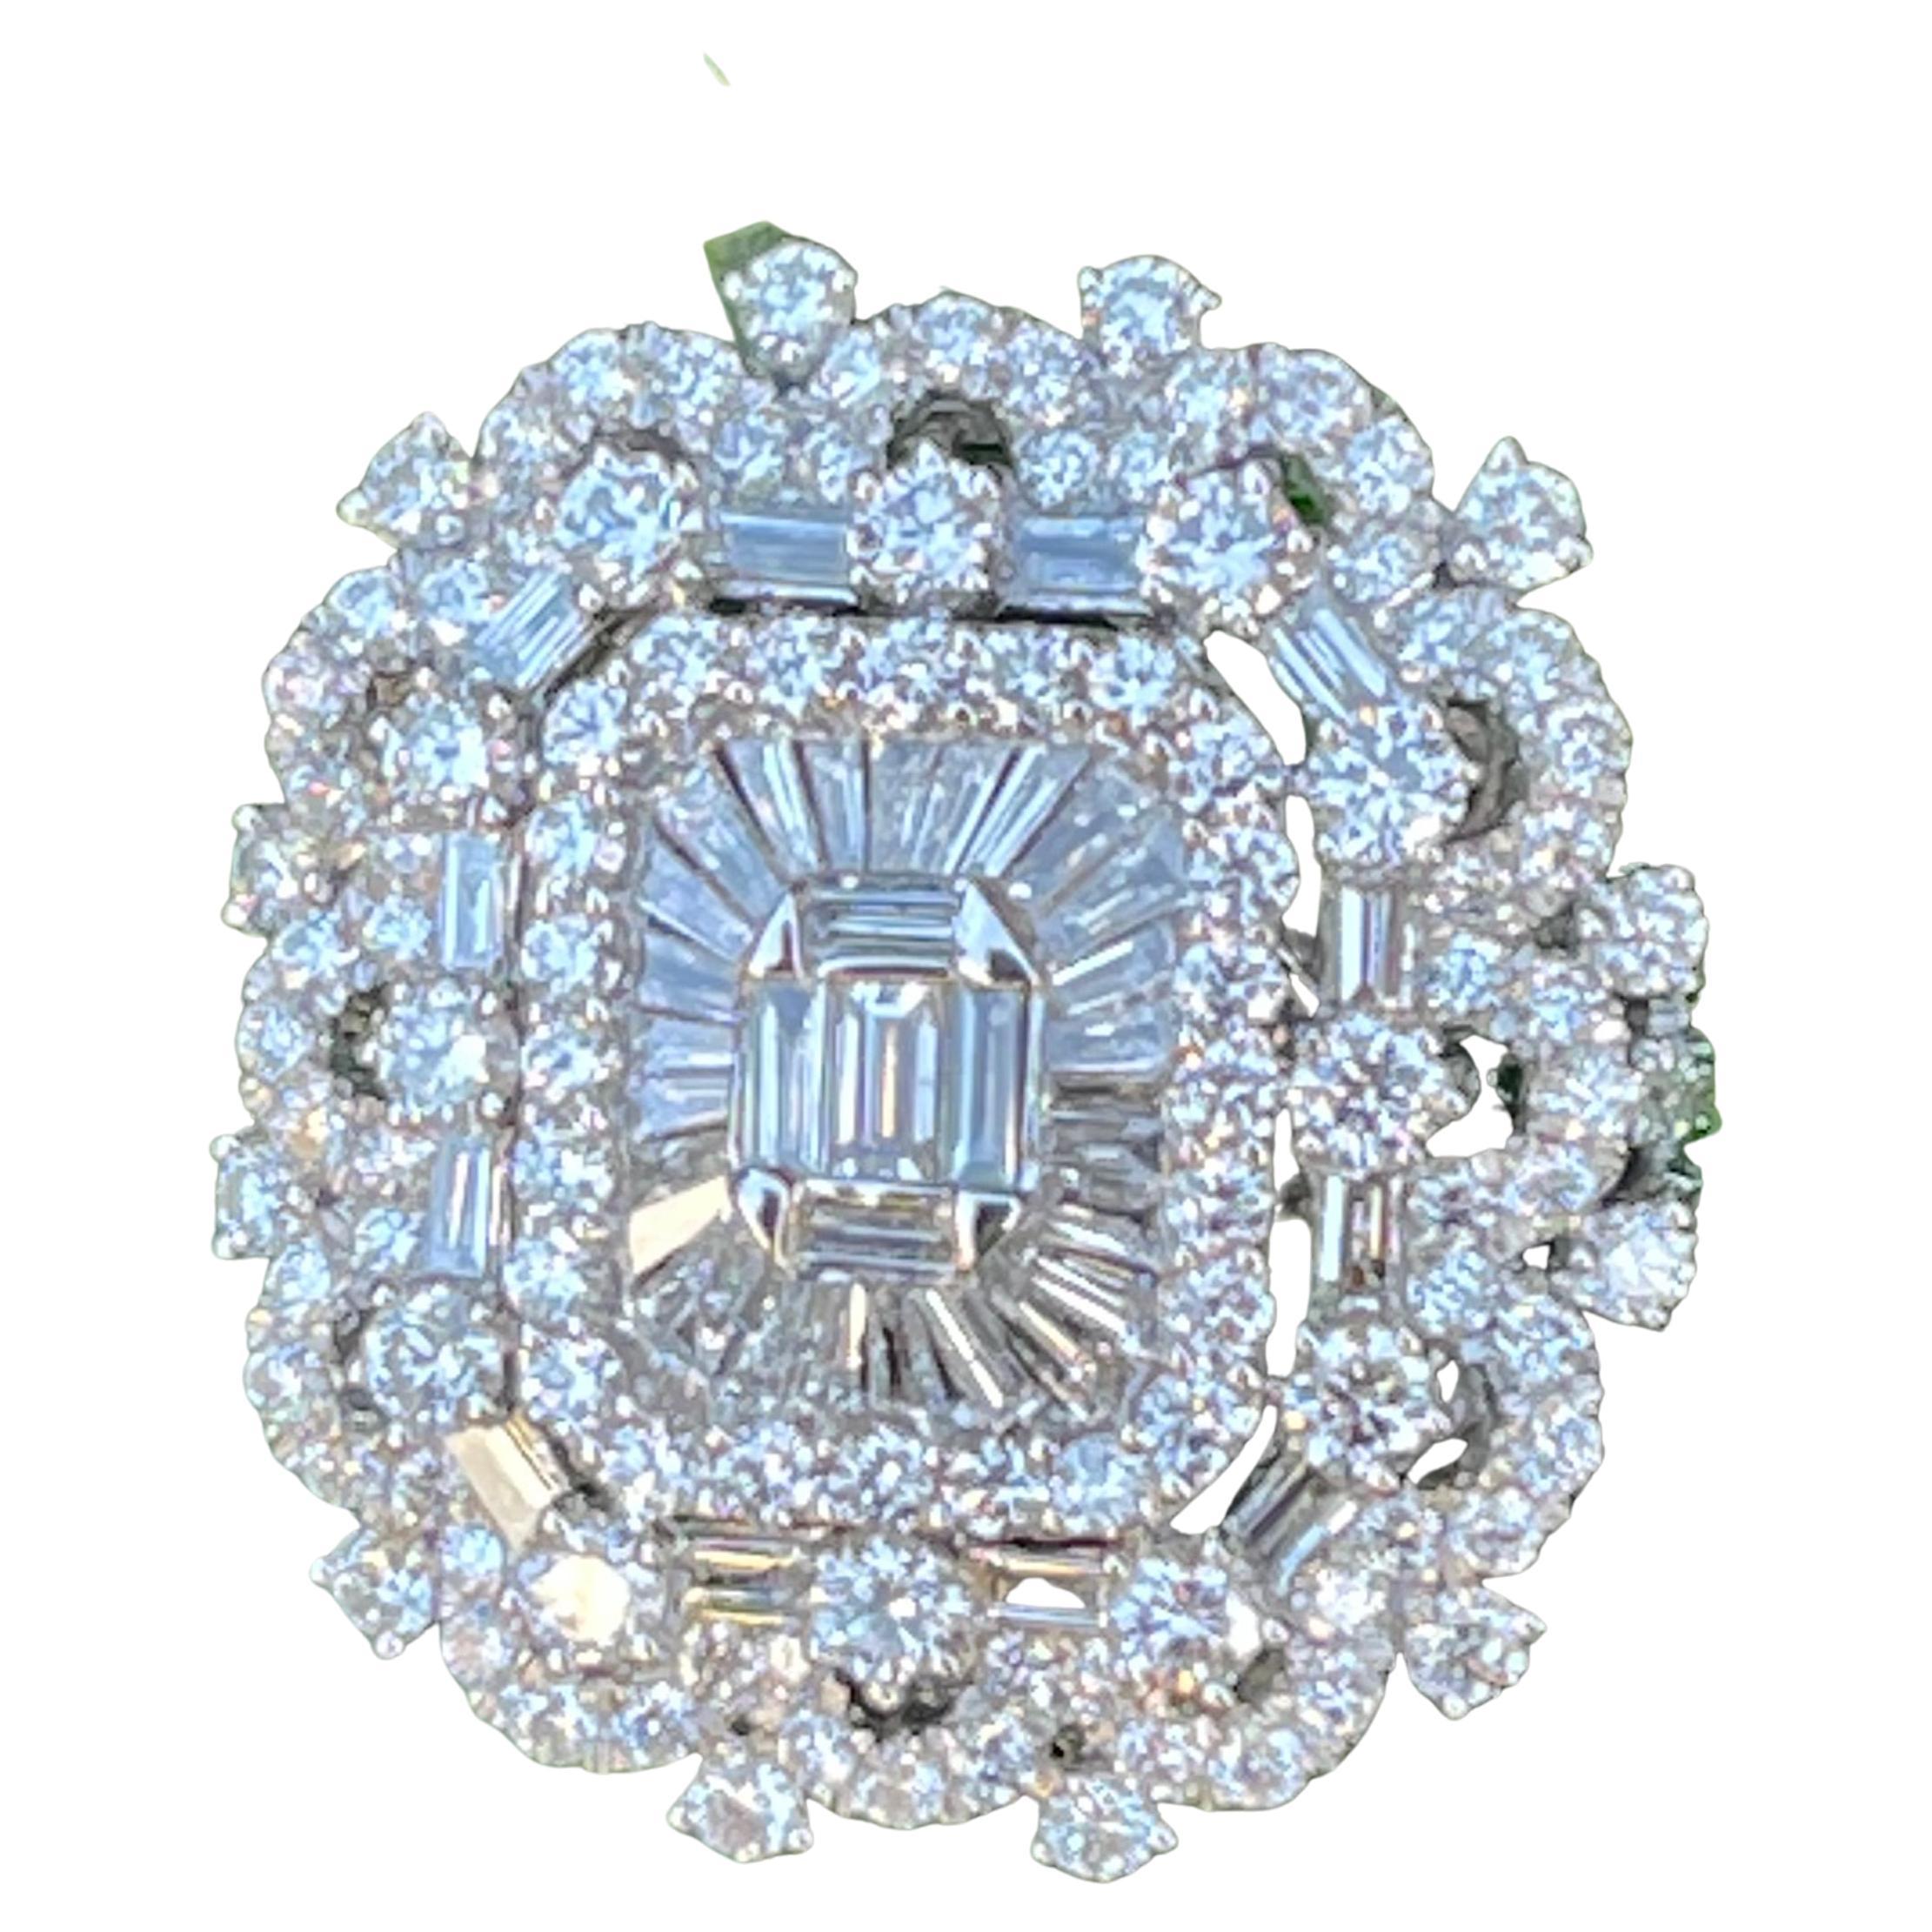 Ravishing 5.25 Carat Diamond Ballerina Center Scalloping Design 18k Gold Ring